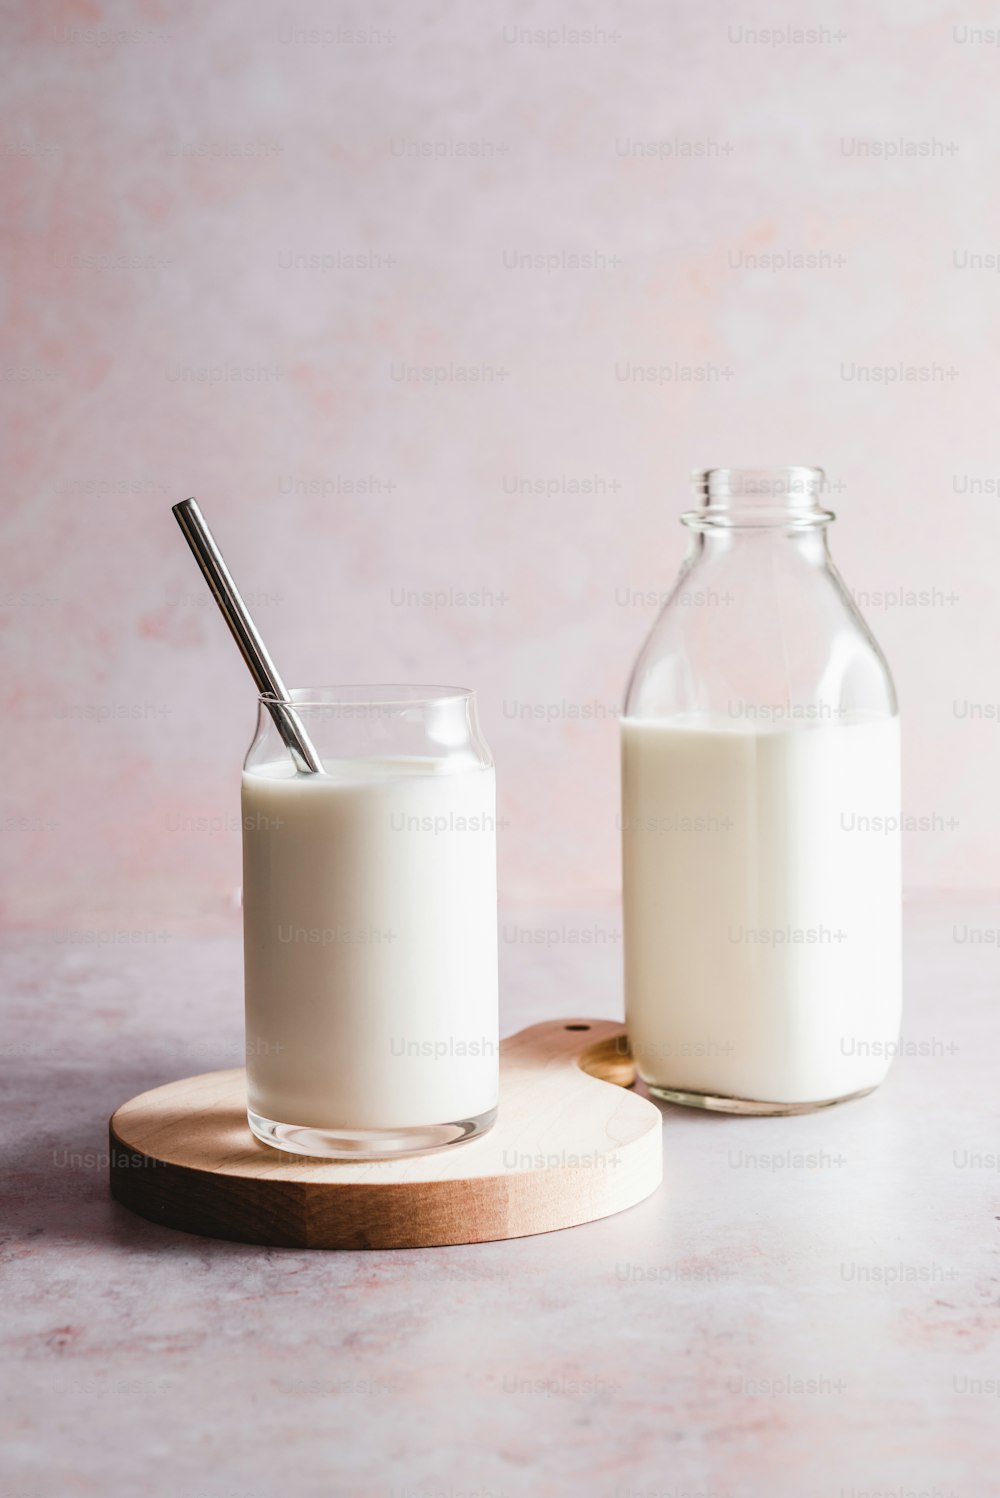 un vaso de leche junto a una botella de leche